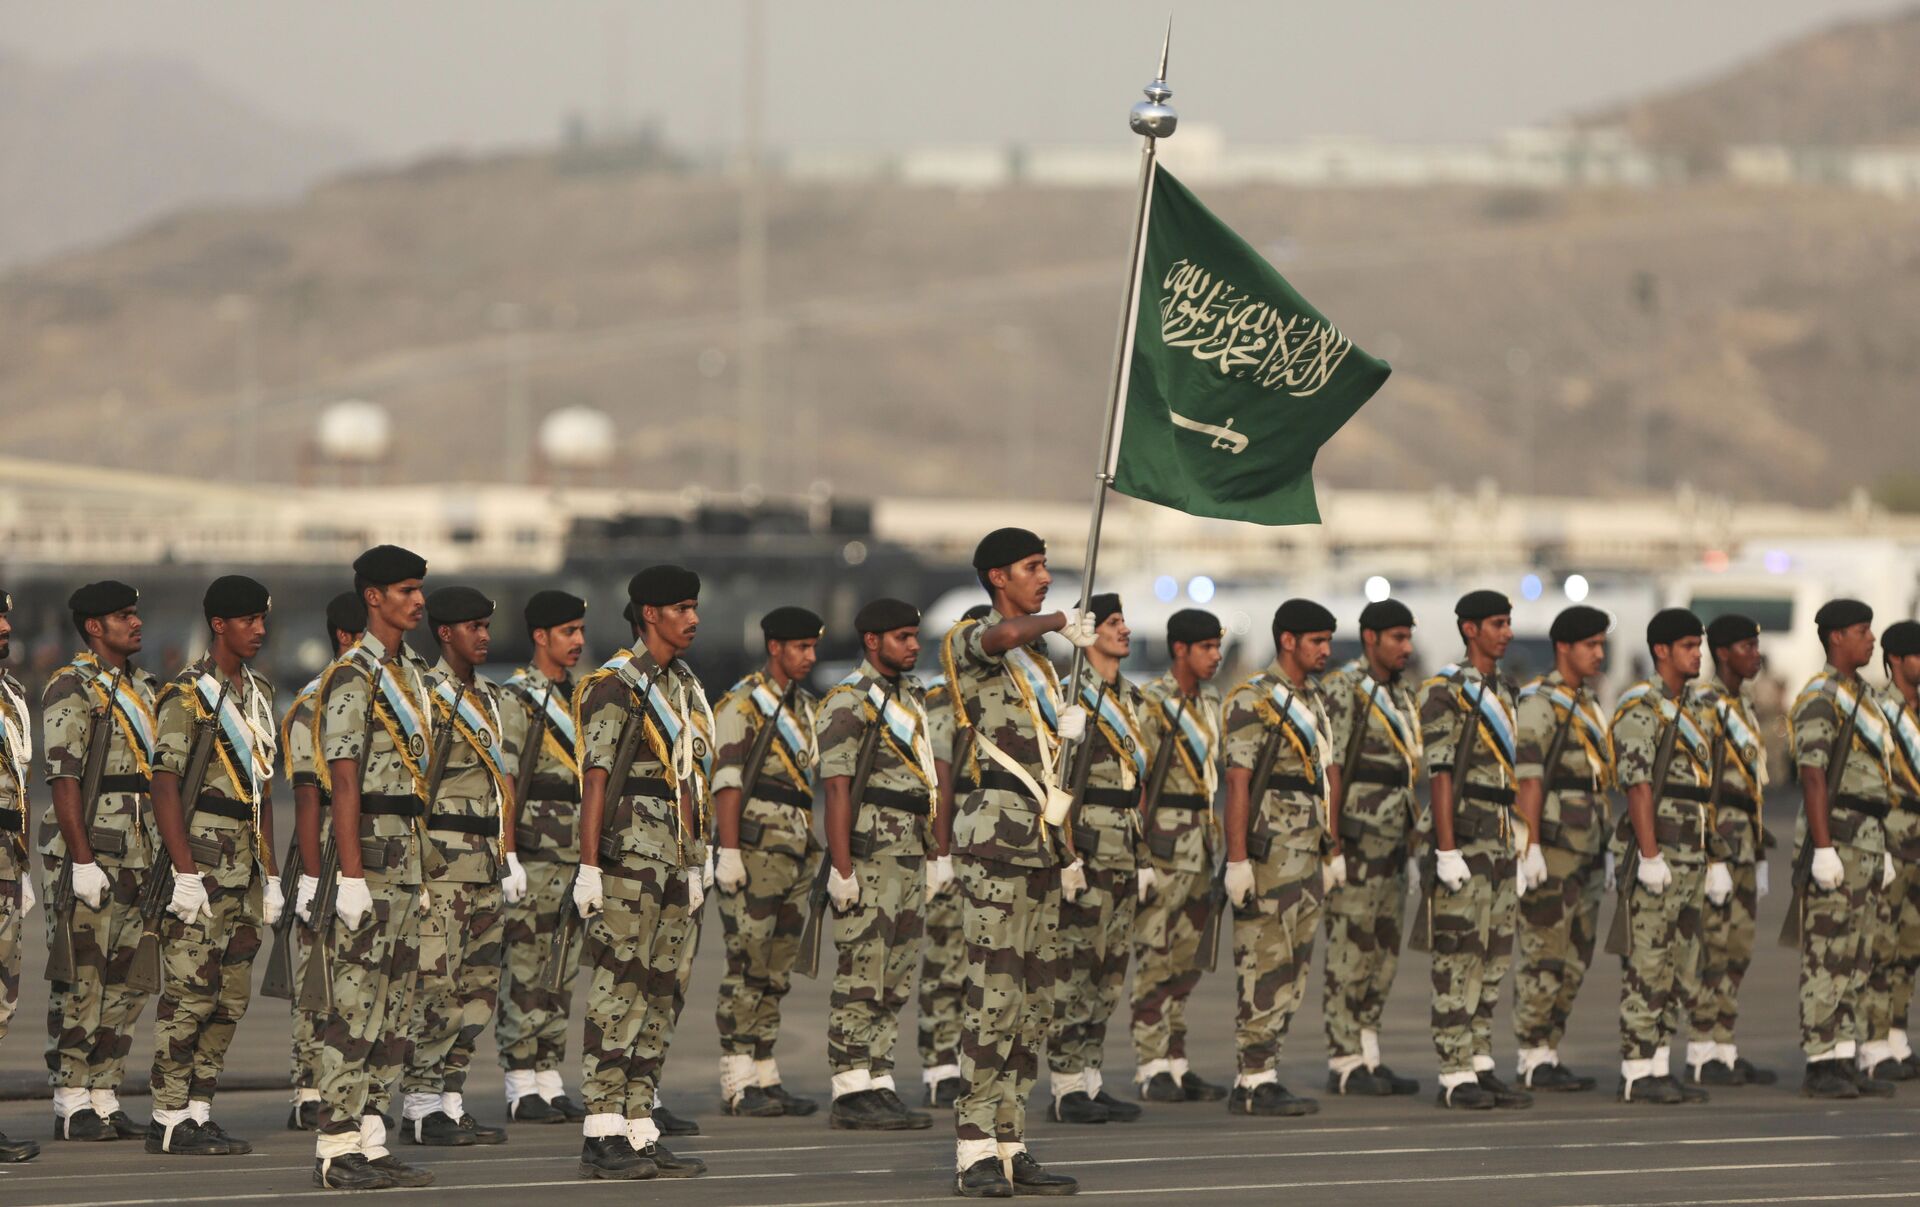 Национальная гвардия Саудовской Аравии. Военная форма армии Саудовской Аравии. Солдаты Саудовской Аравии.